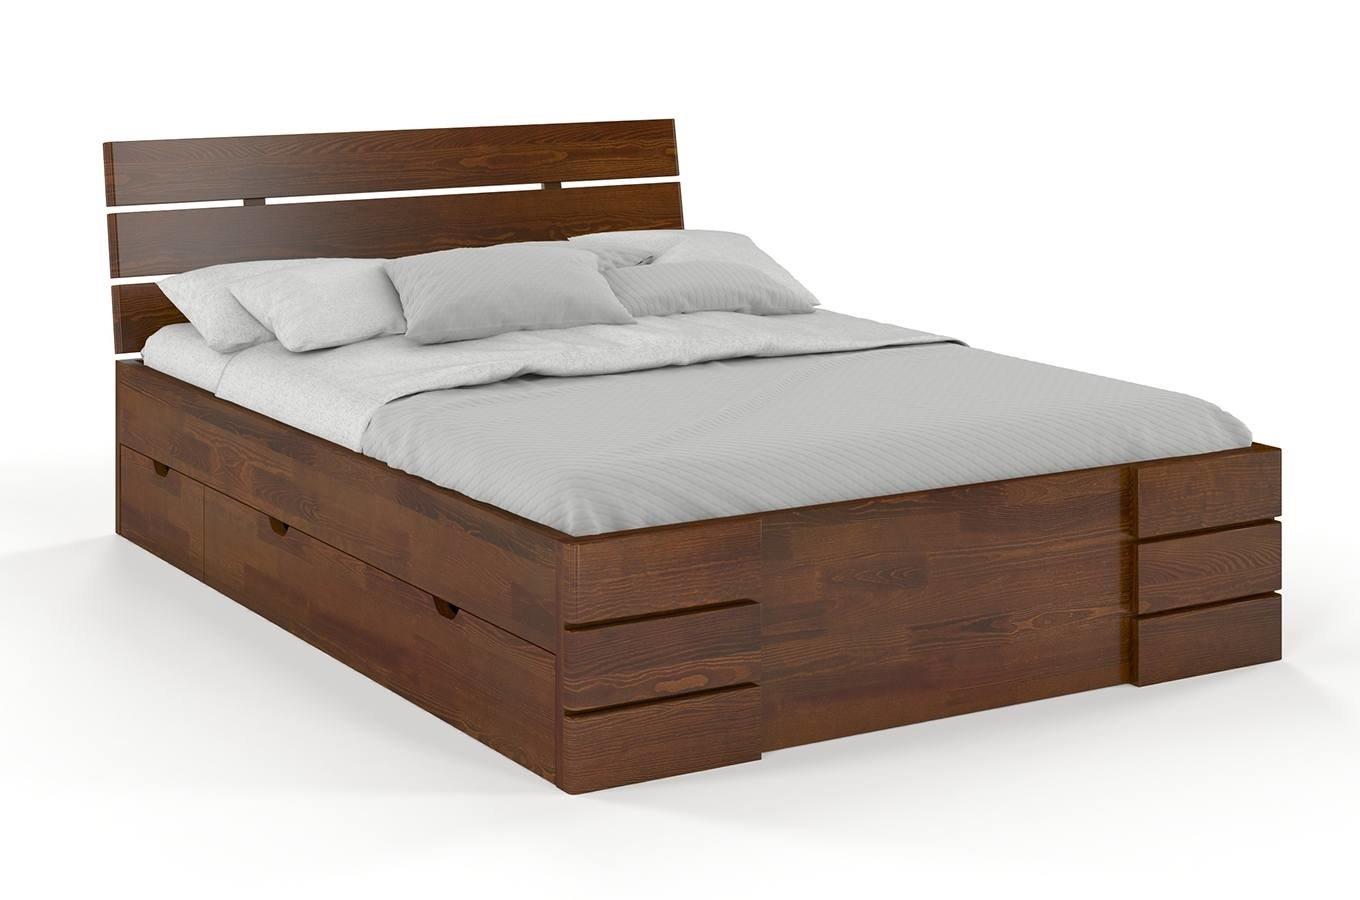 Łóżko drewniane sosnowe Visby Sandemo High Drawers (z szufladami) / 140x200 cm, kolor orzech